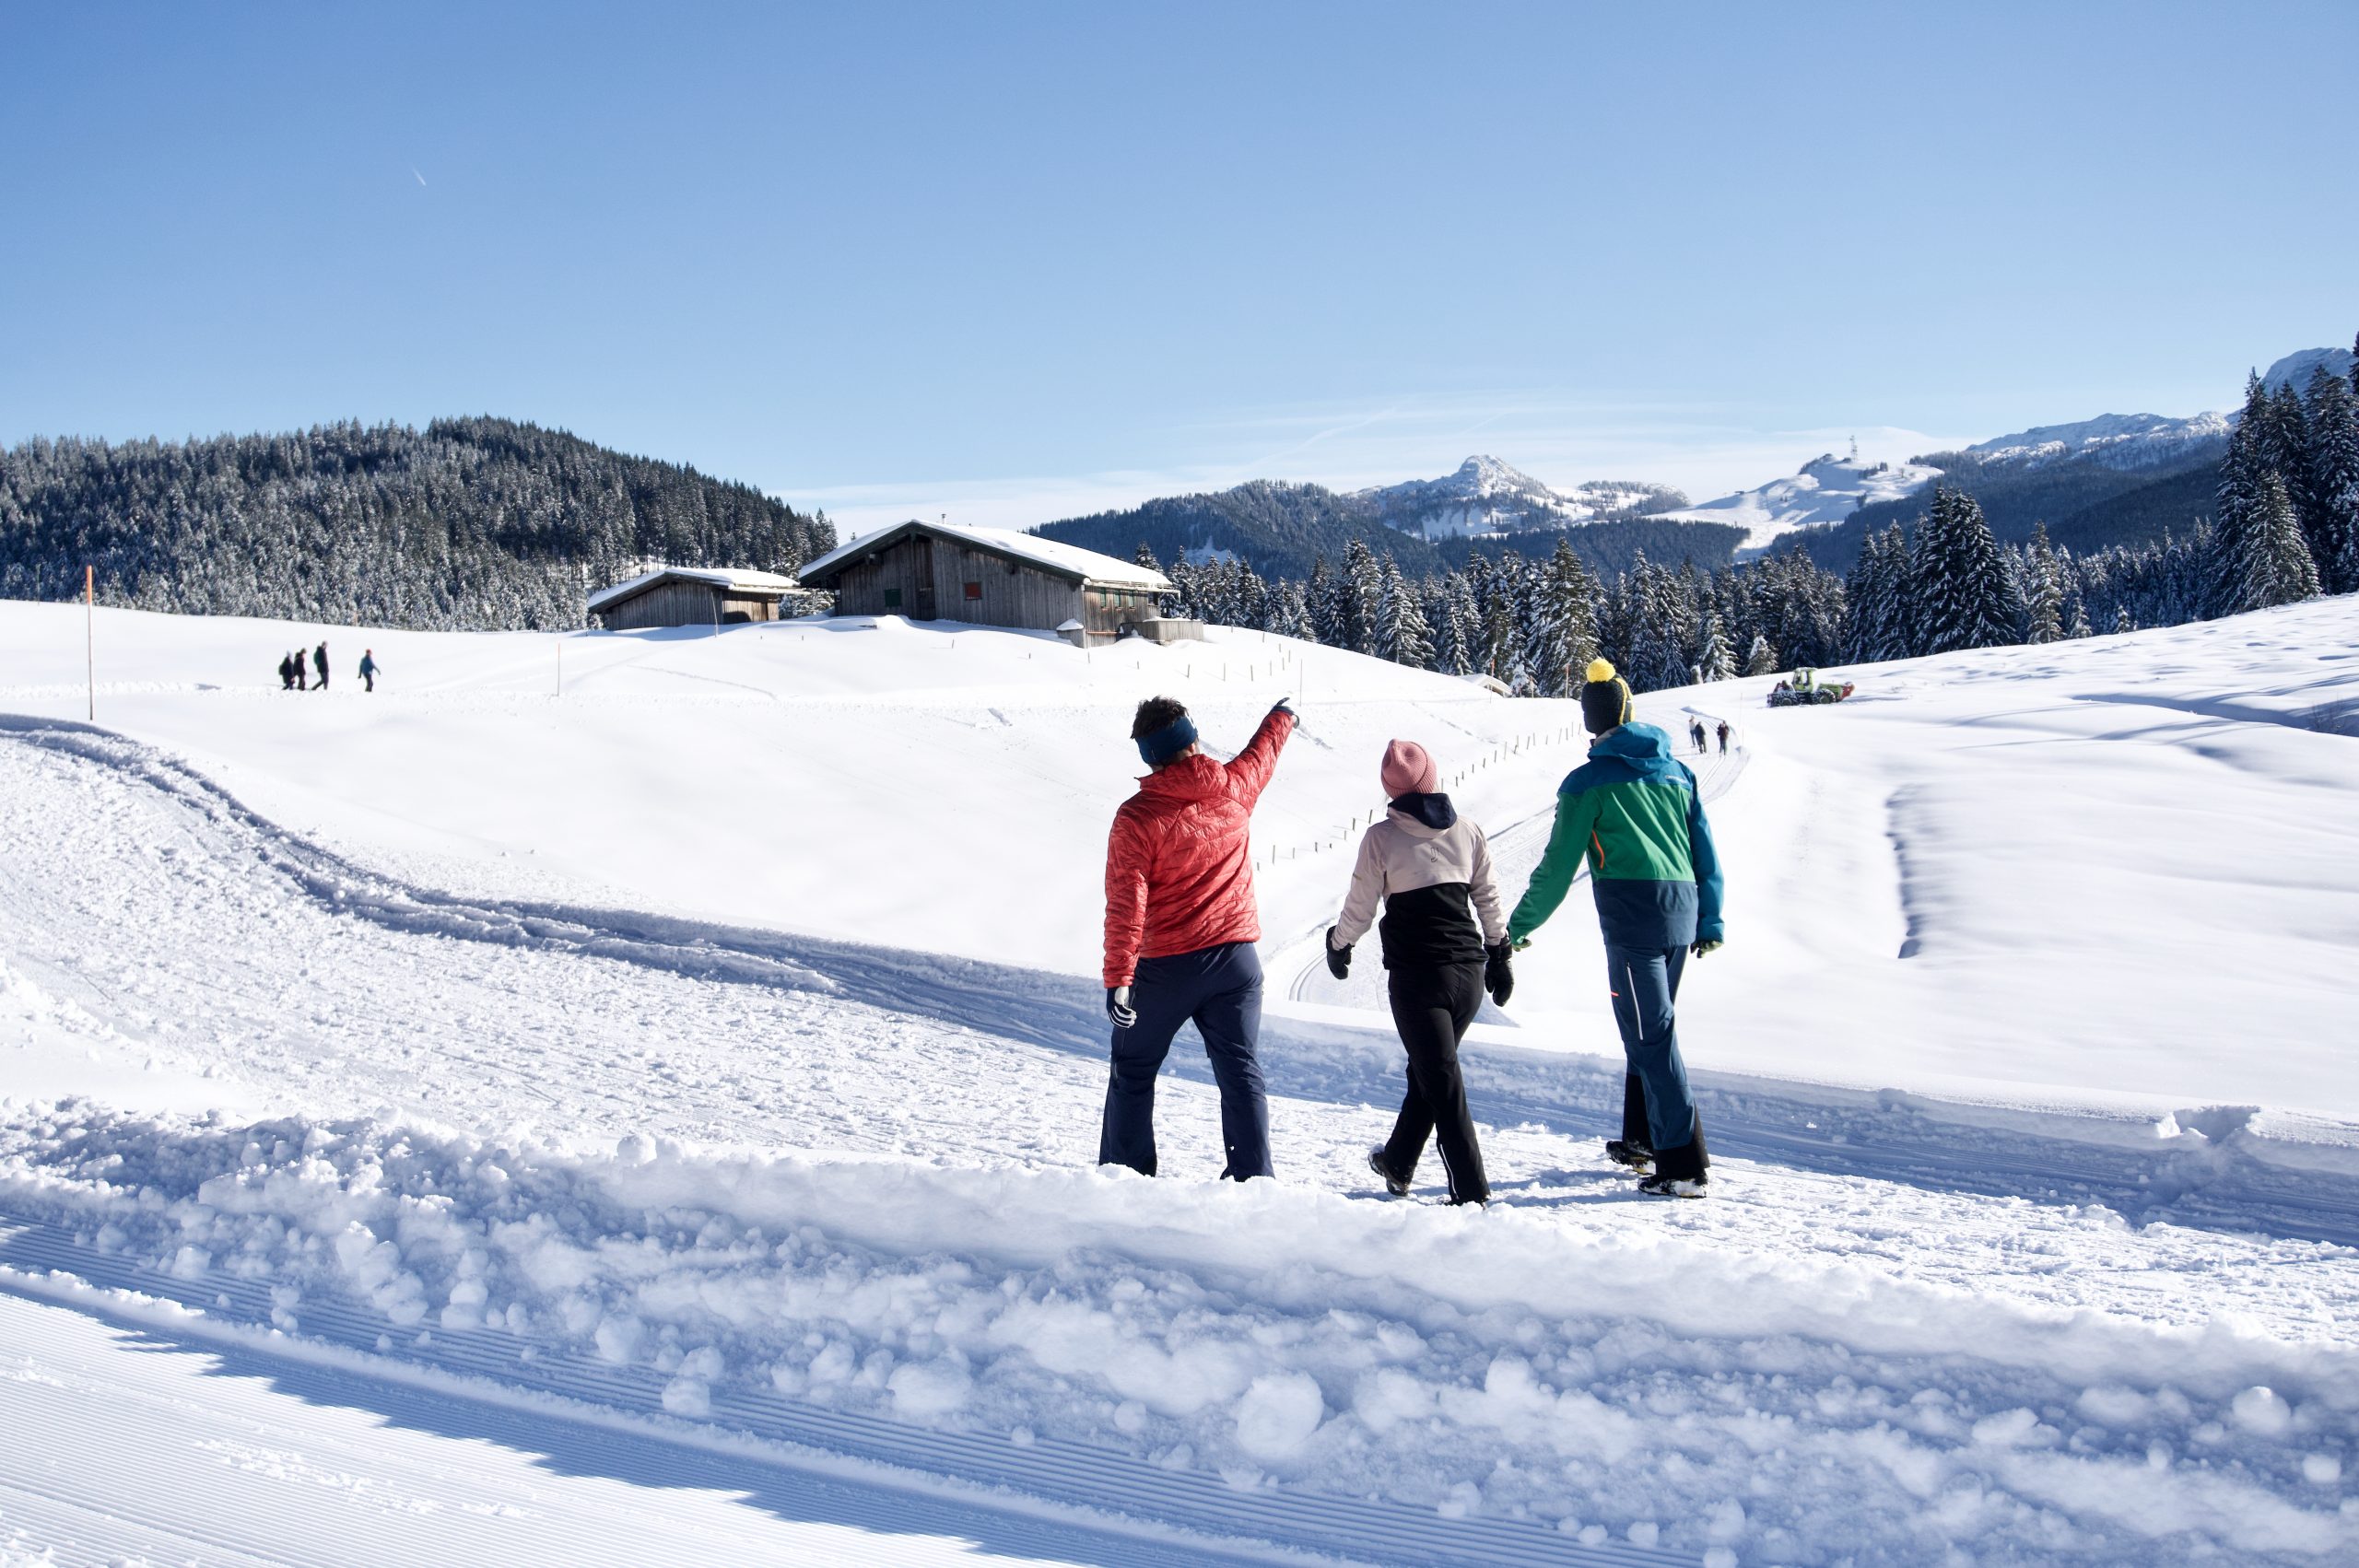 Winterwandern in Reit im Winkl (c) Hannes Heigenhauser - Mount Inspire Storytelling und Online Marketing